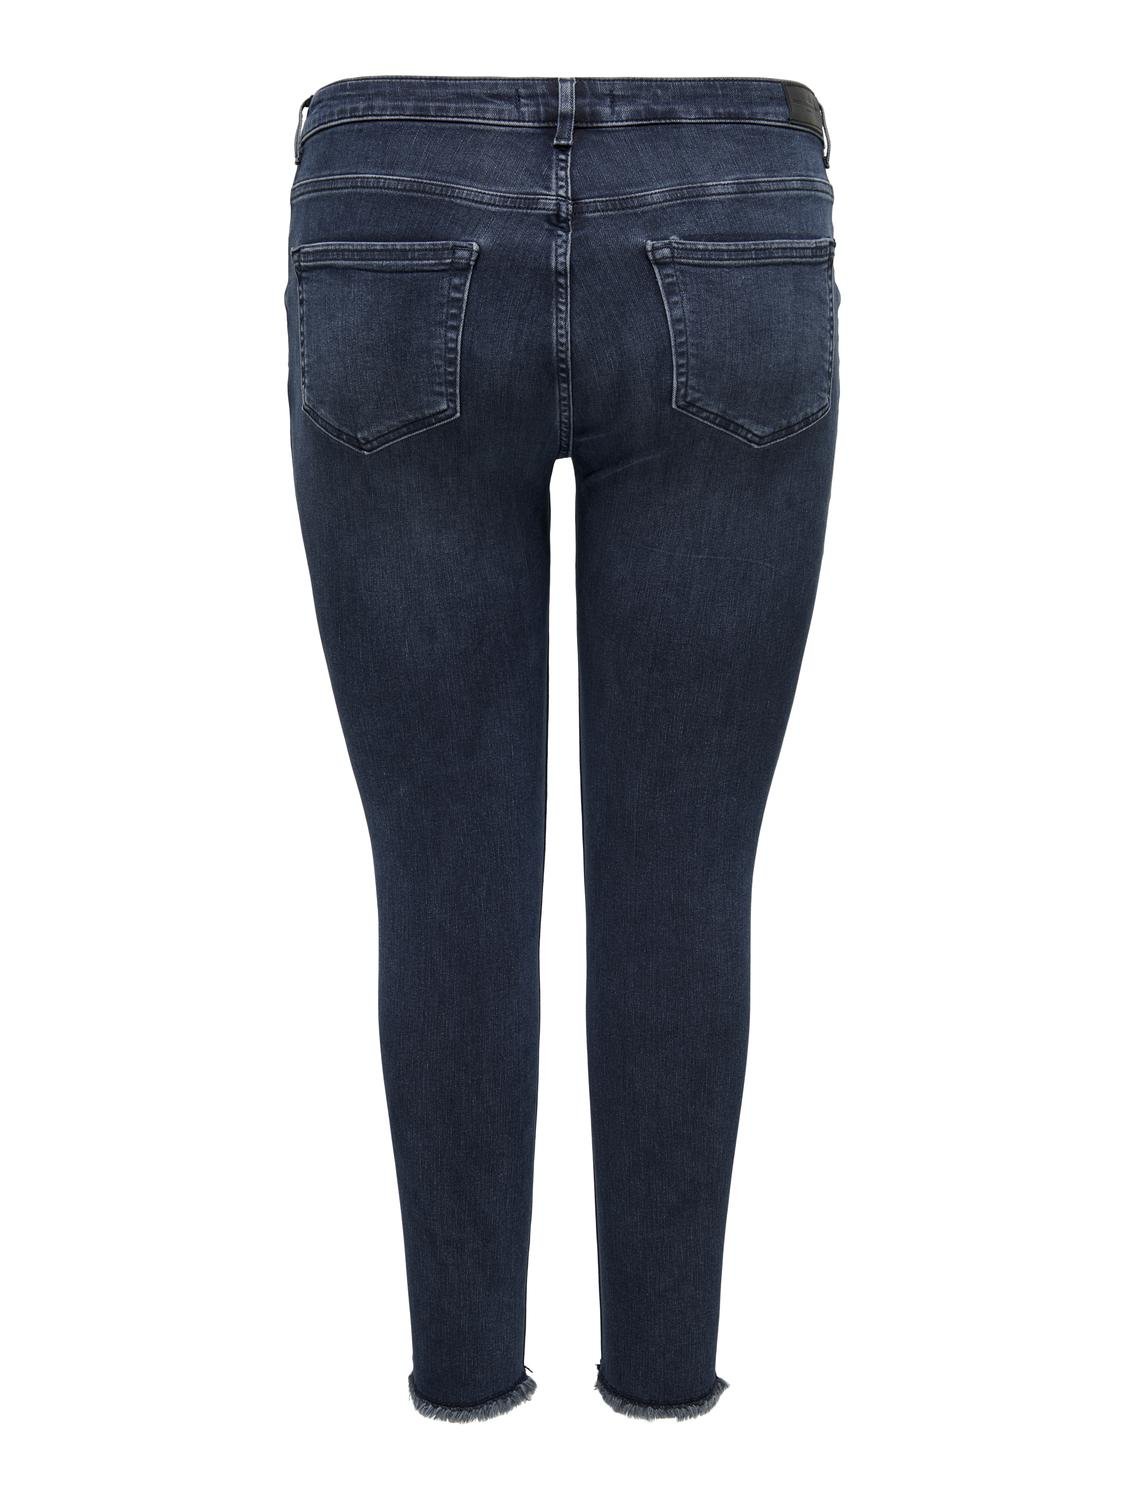 ONLY Skinny Fit Curve Jeans -Blue Black Denim - 15217934